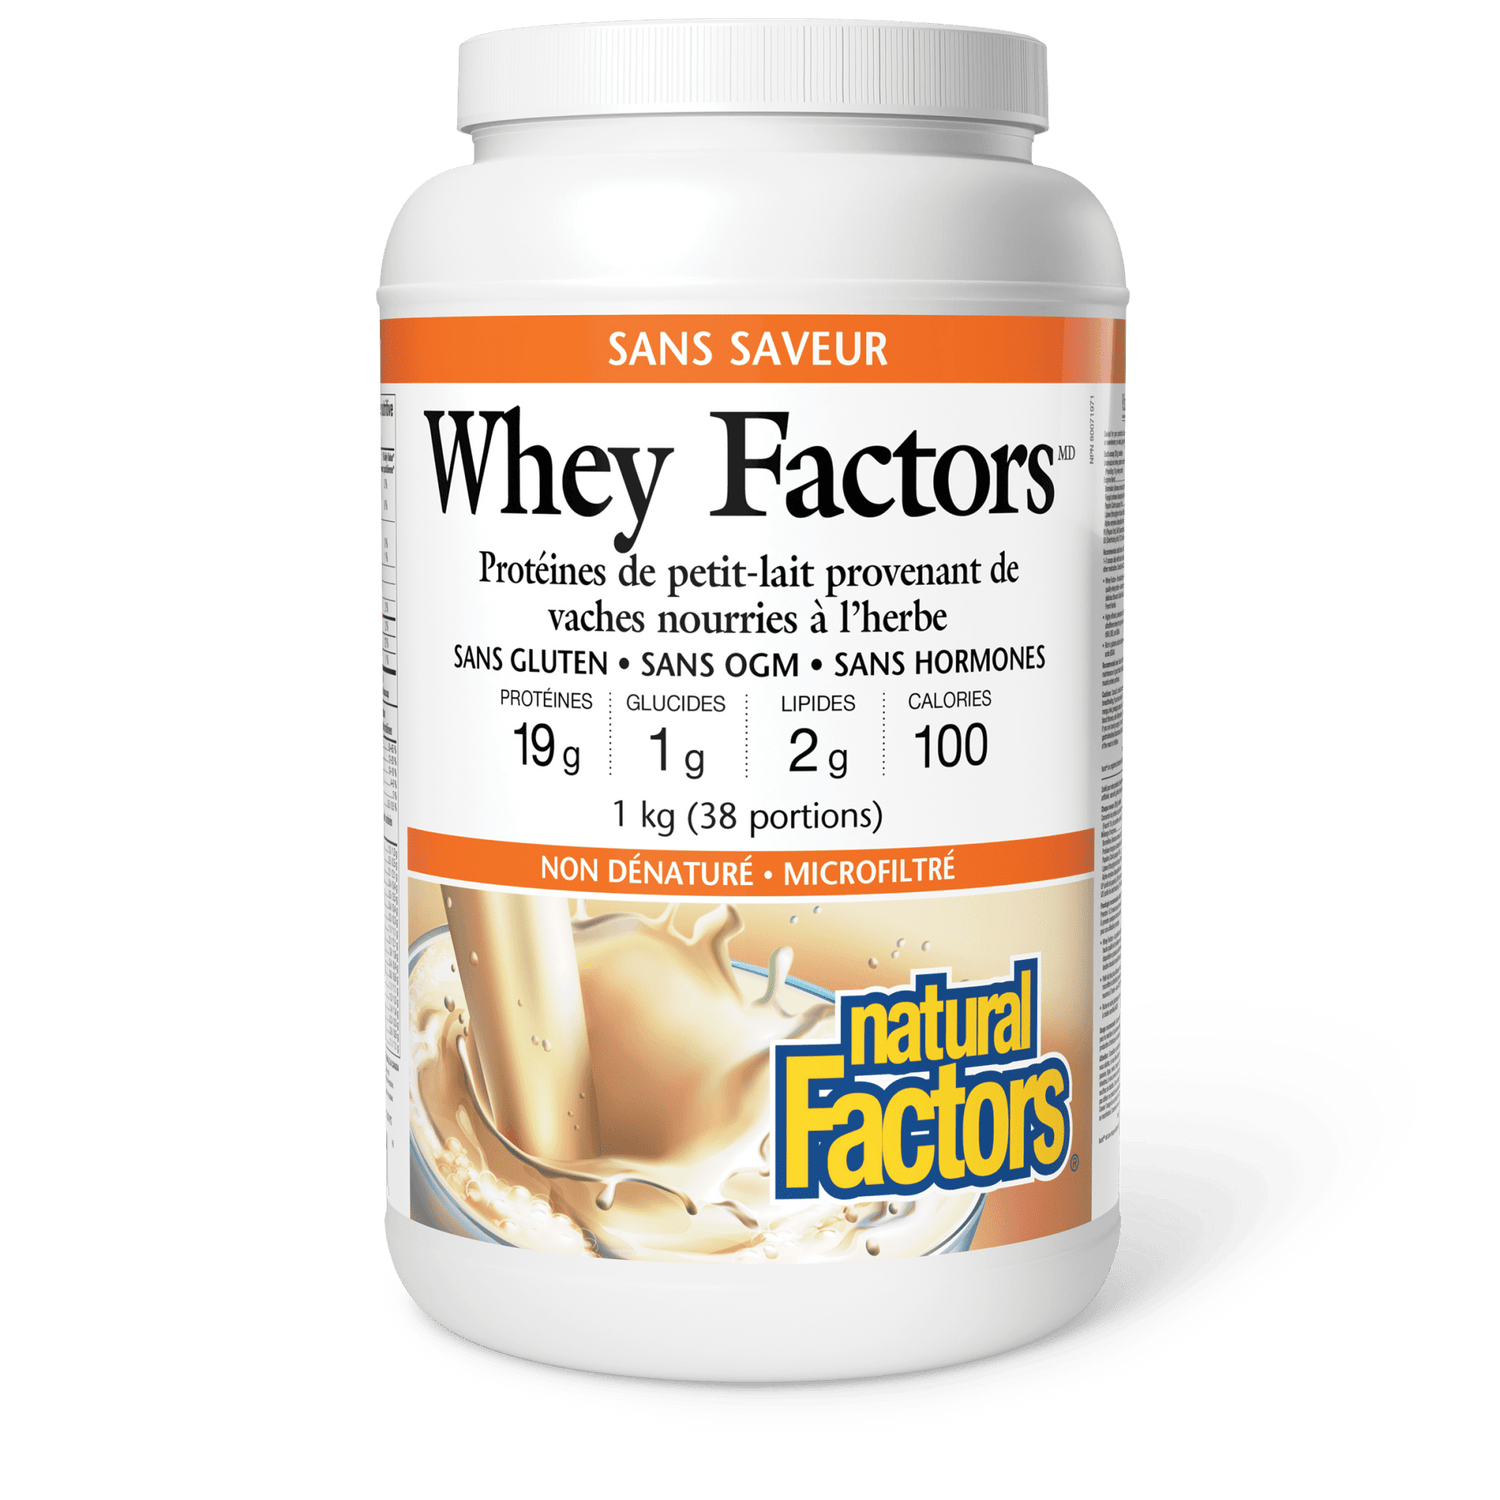 Whey Factors Protéine de petit-lait, sans saveur, Natural Factors|v|image|2929